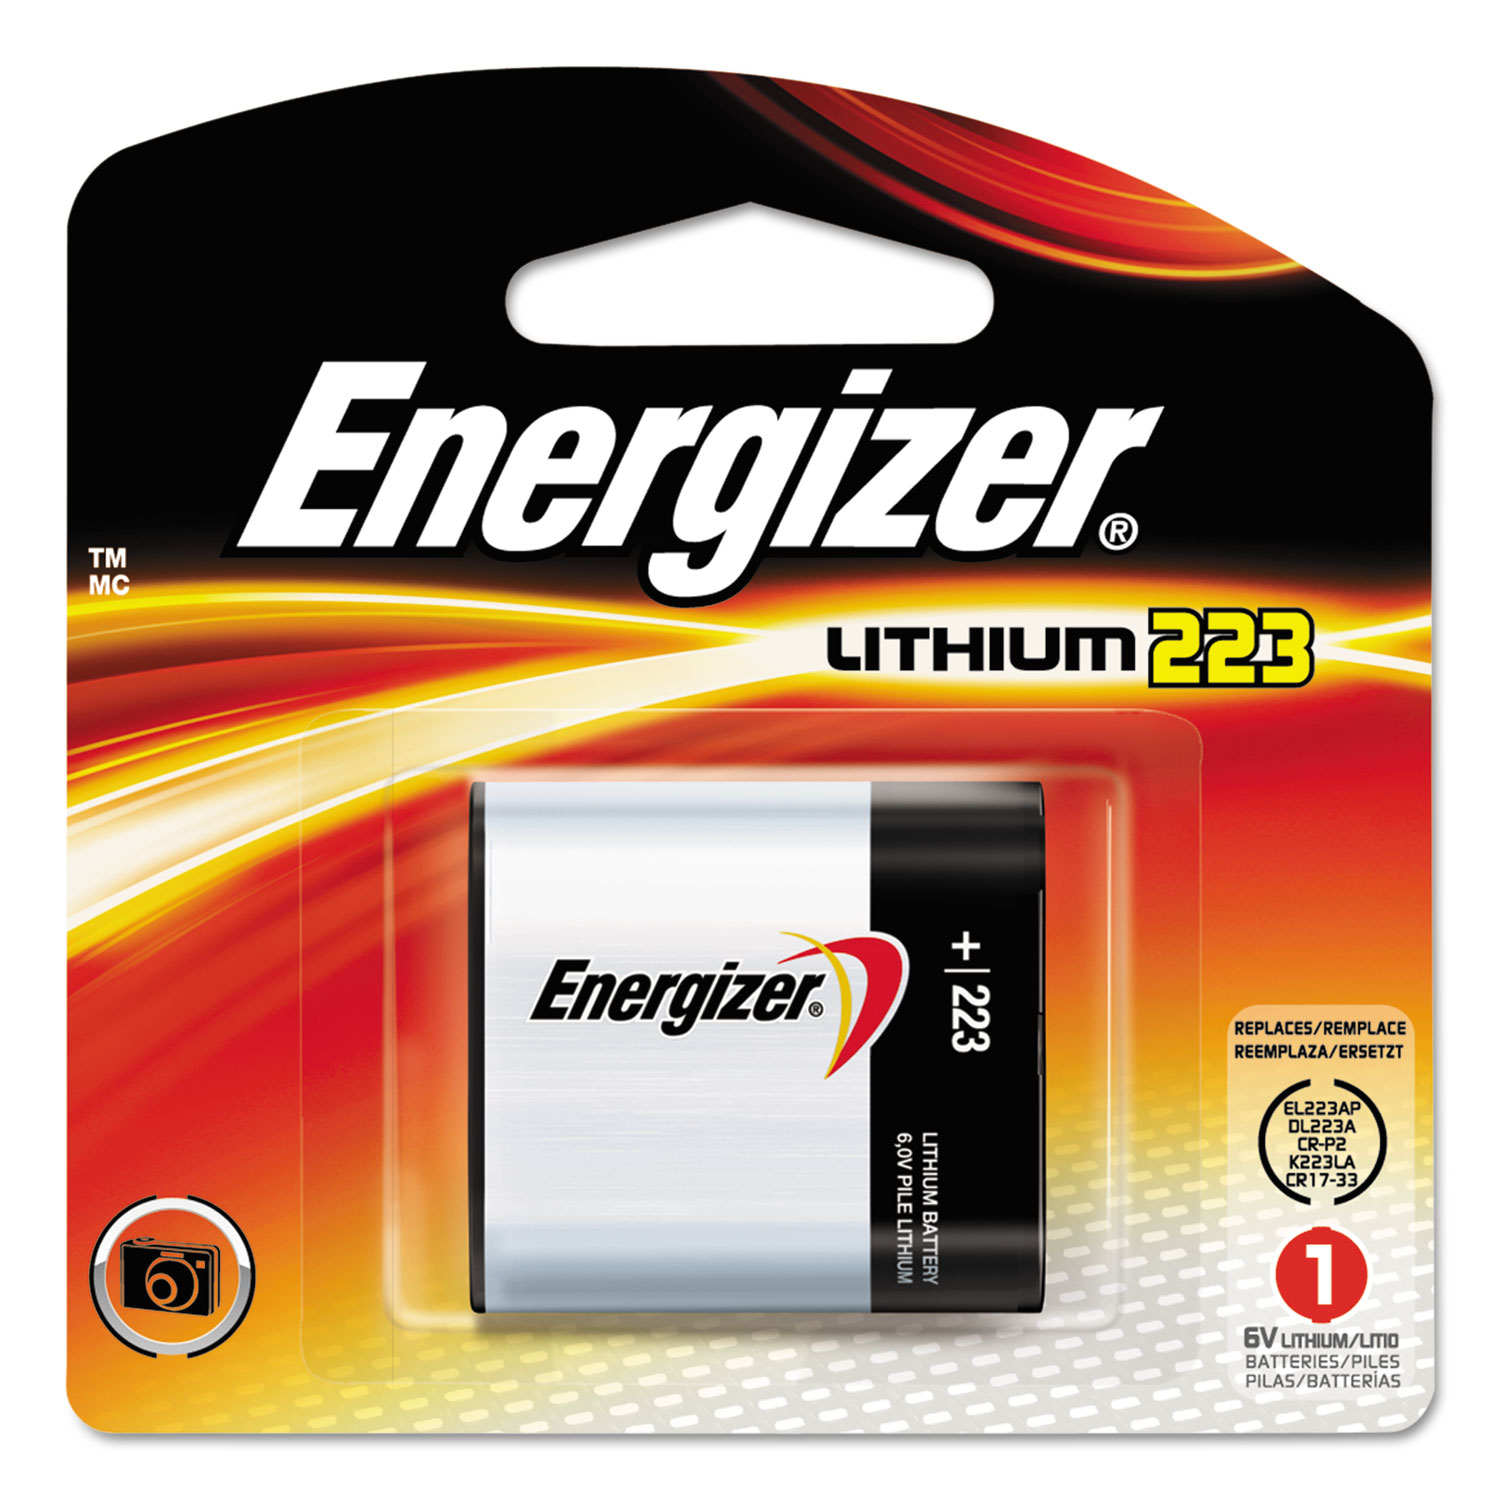 Lithium Photo Battery, 223, 6V